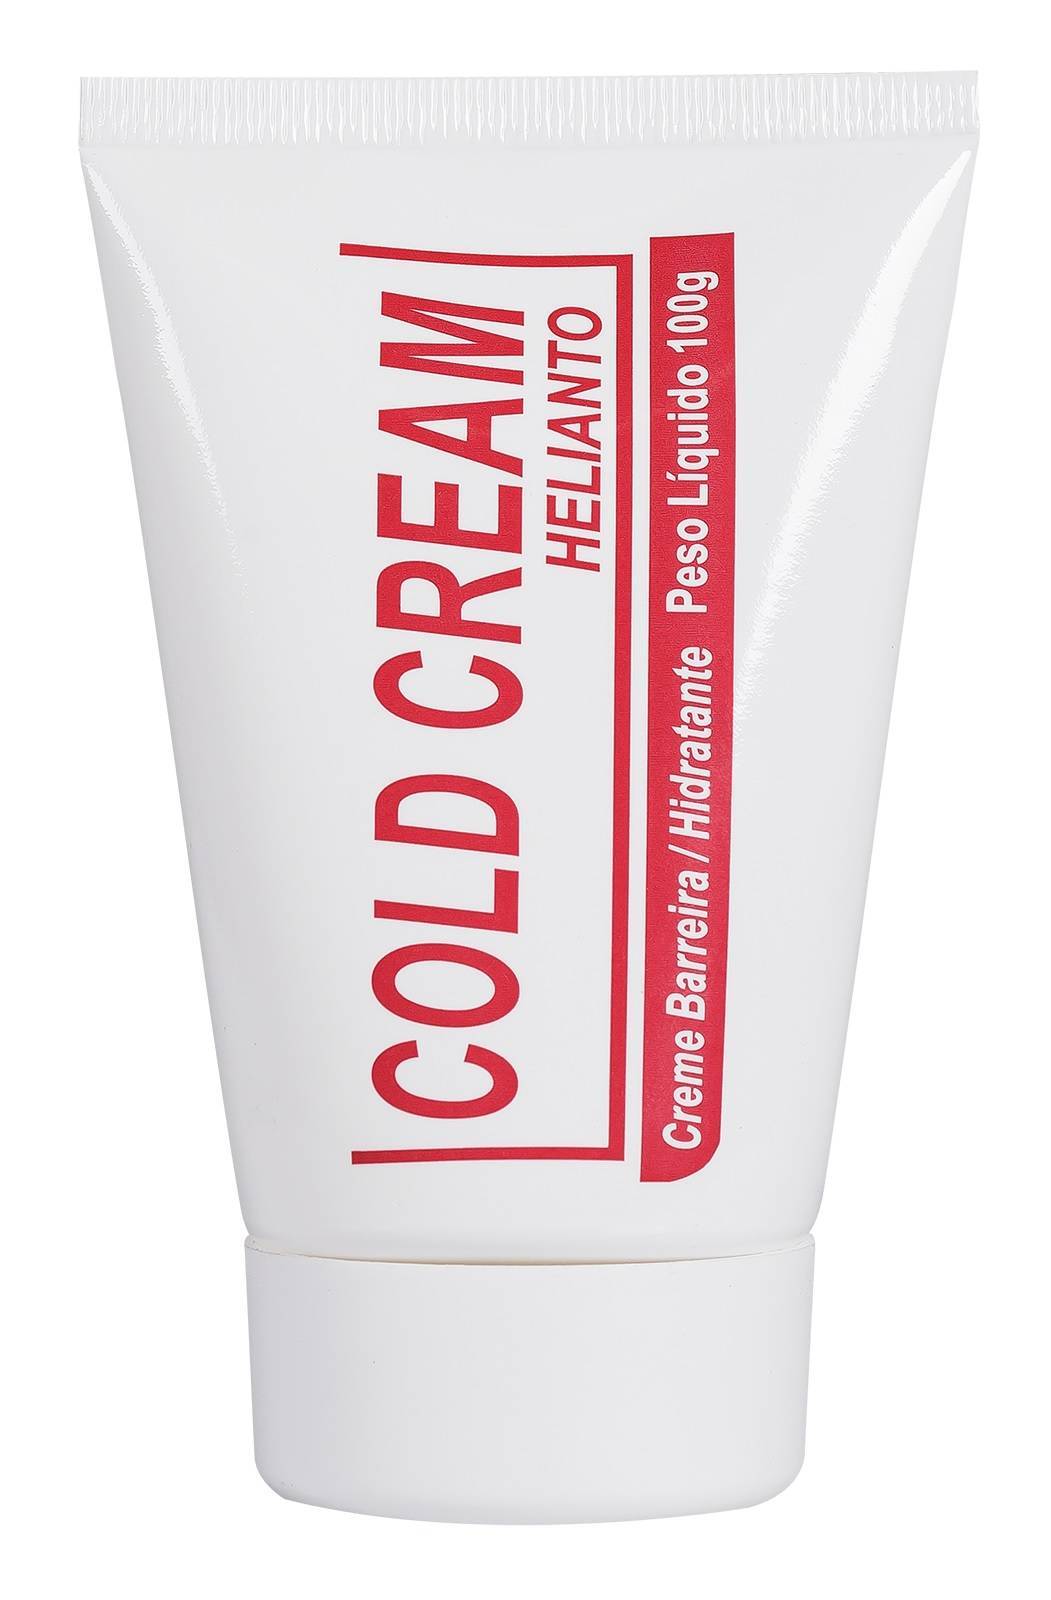 Creme Barreira Cold Cream 200g - Soft Care Produtos Médicos